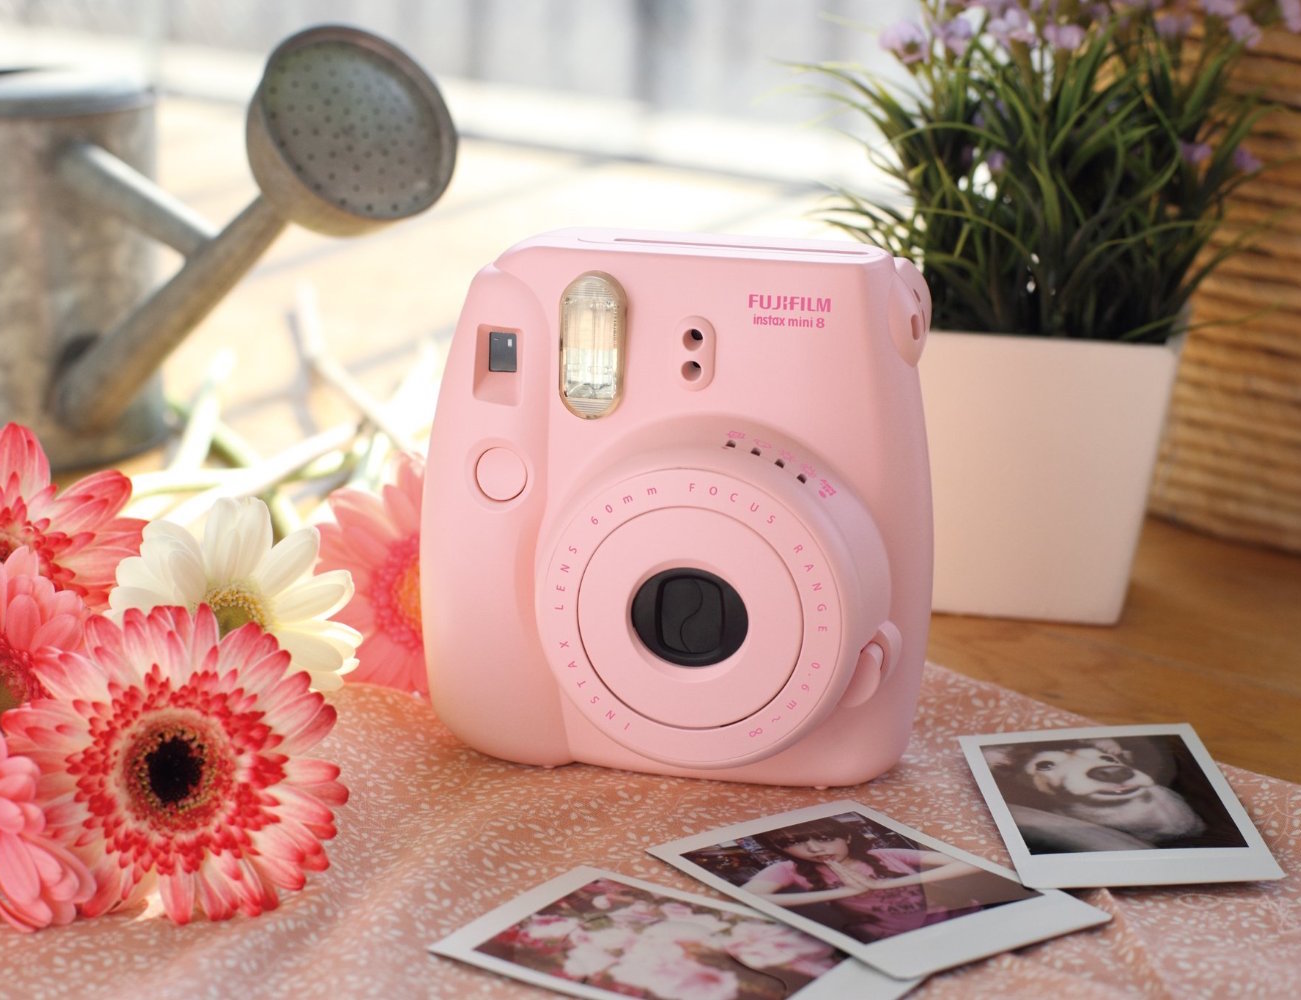 cadeau de noel pour femme hi tech, un appareil photo polaroid couleur rose pour prendre des photos instantanées